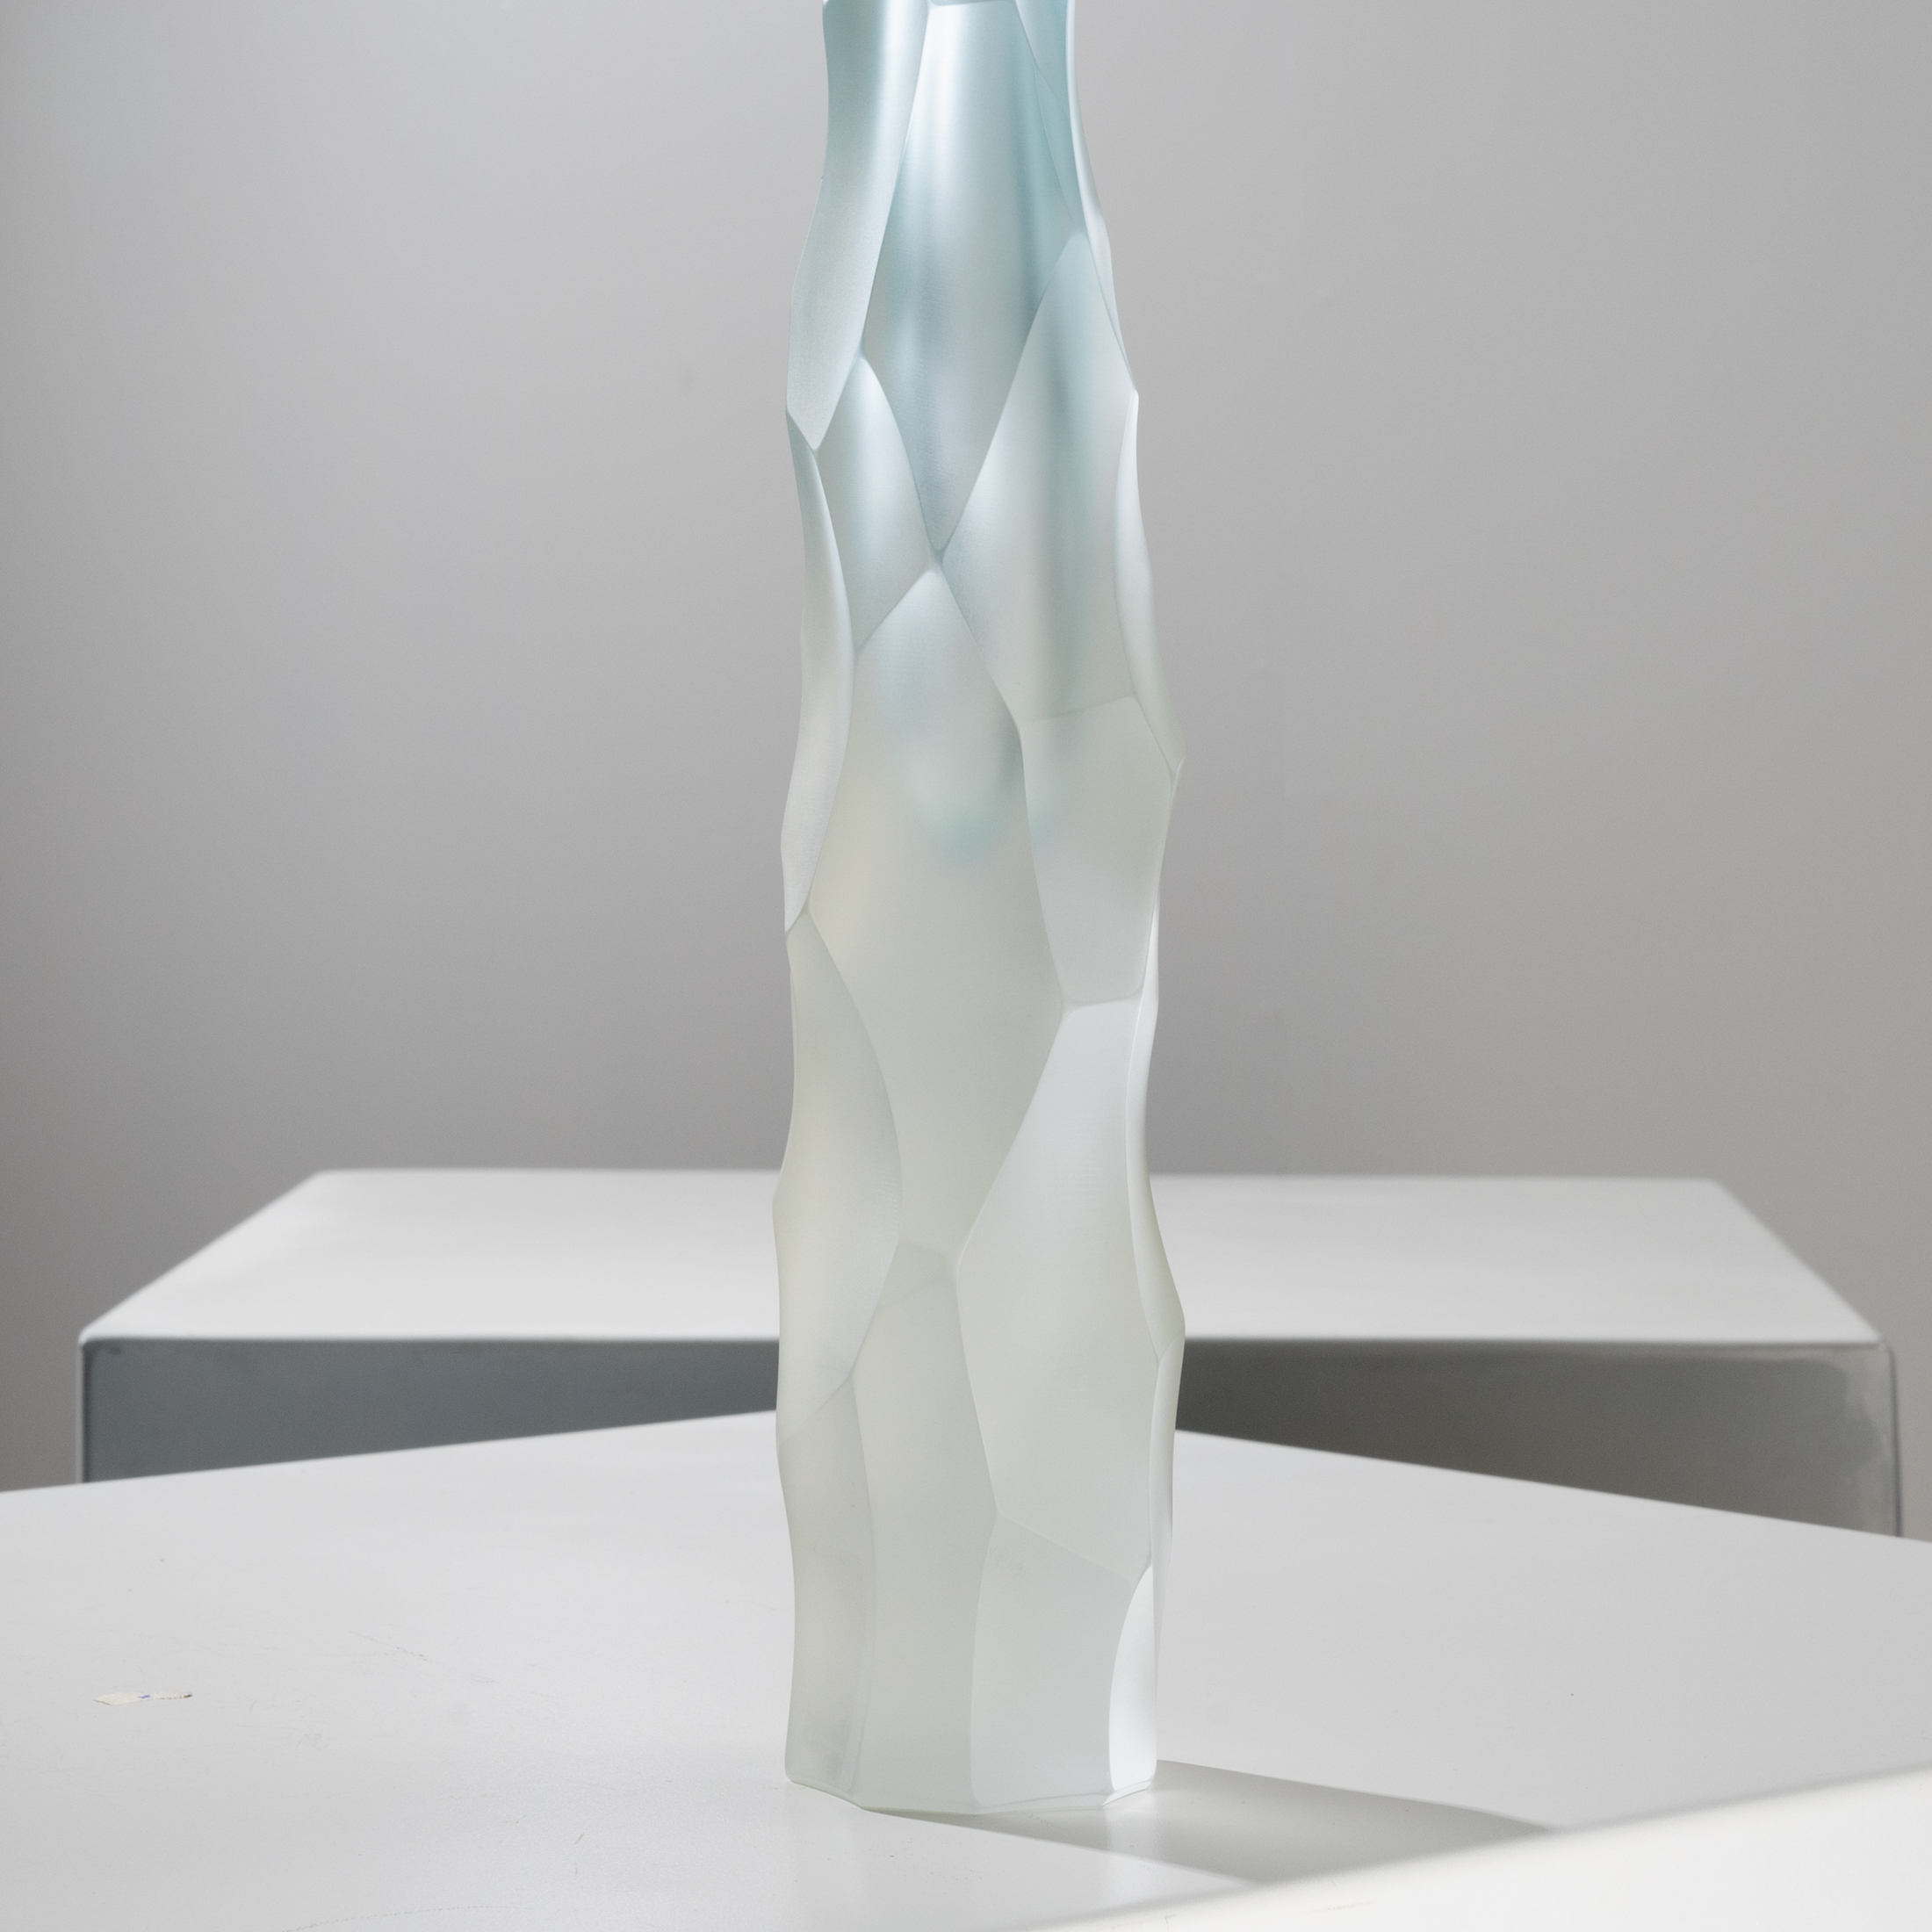 F03_18 Siderale sommerso glass sculpture Giorgio Vigna Venini -4